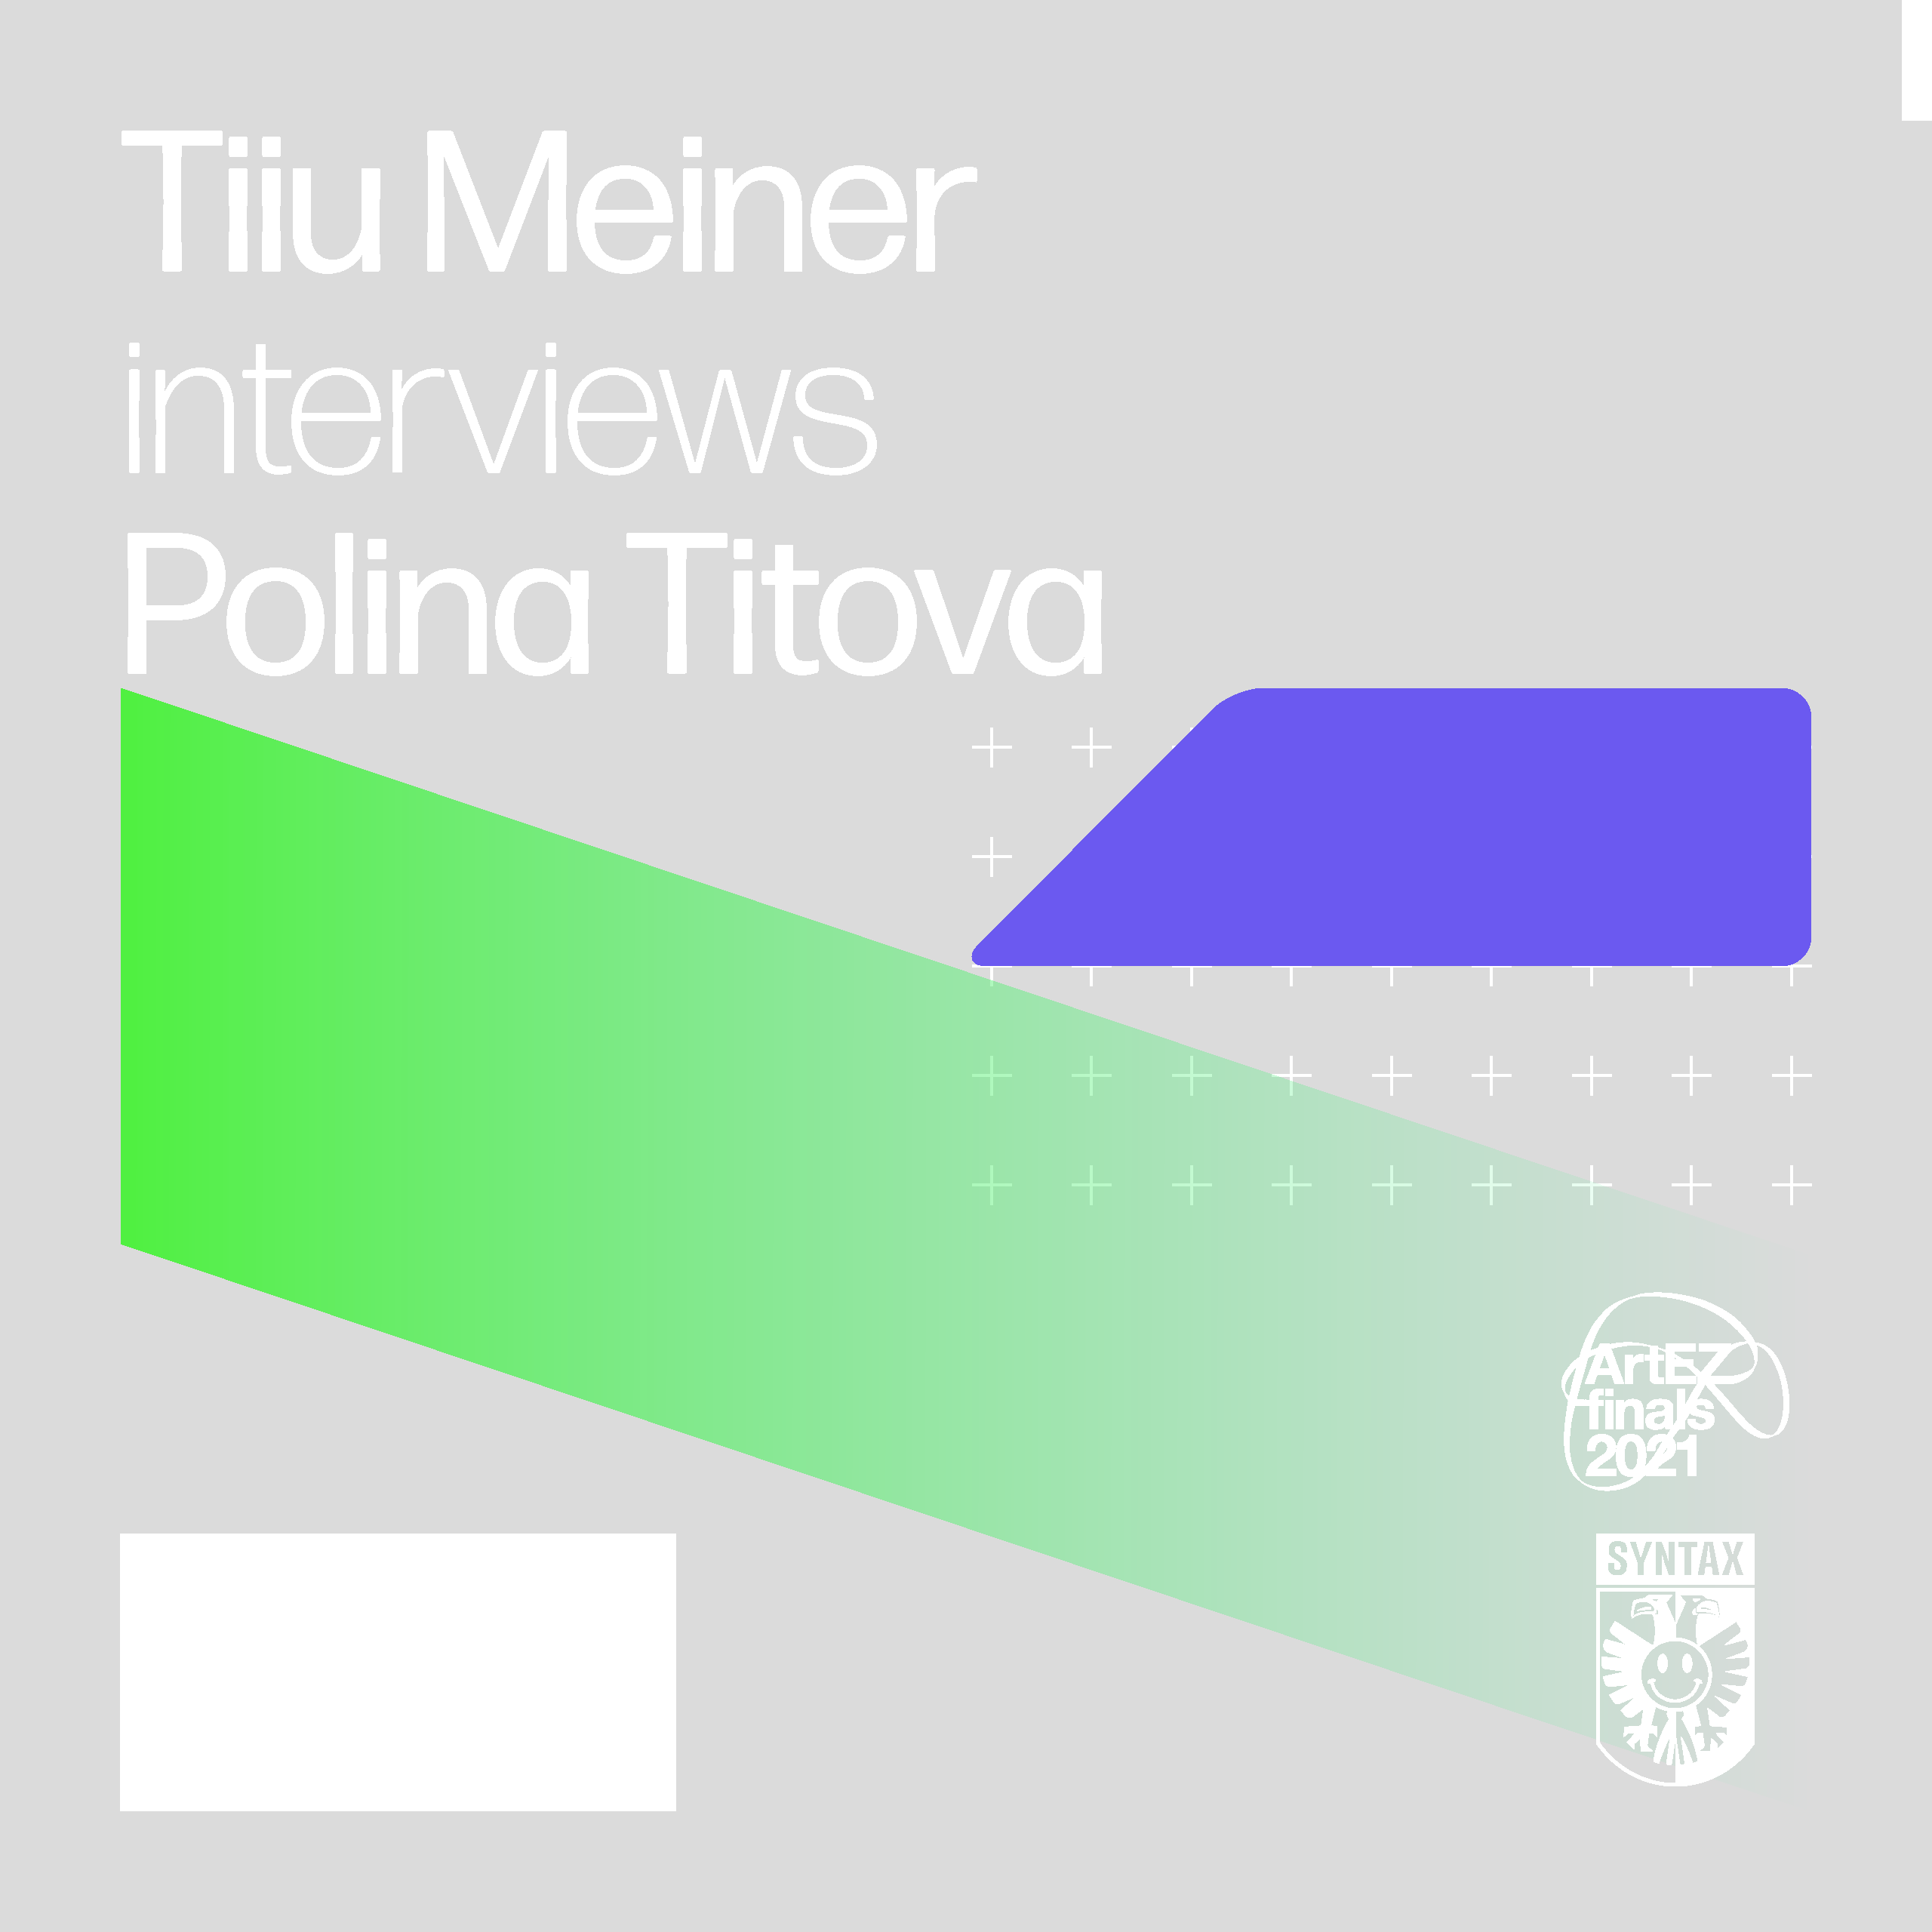 Tiiu Meiner interviews Polina Titova